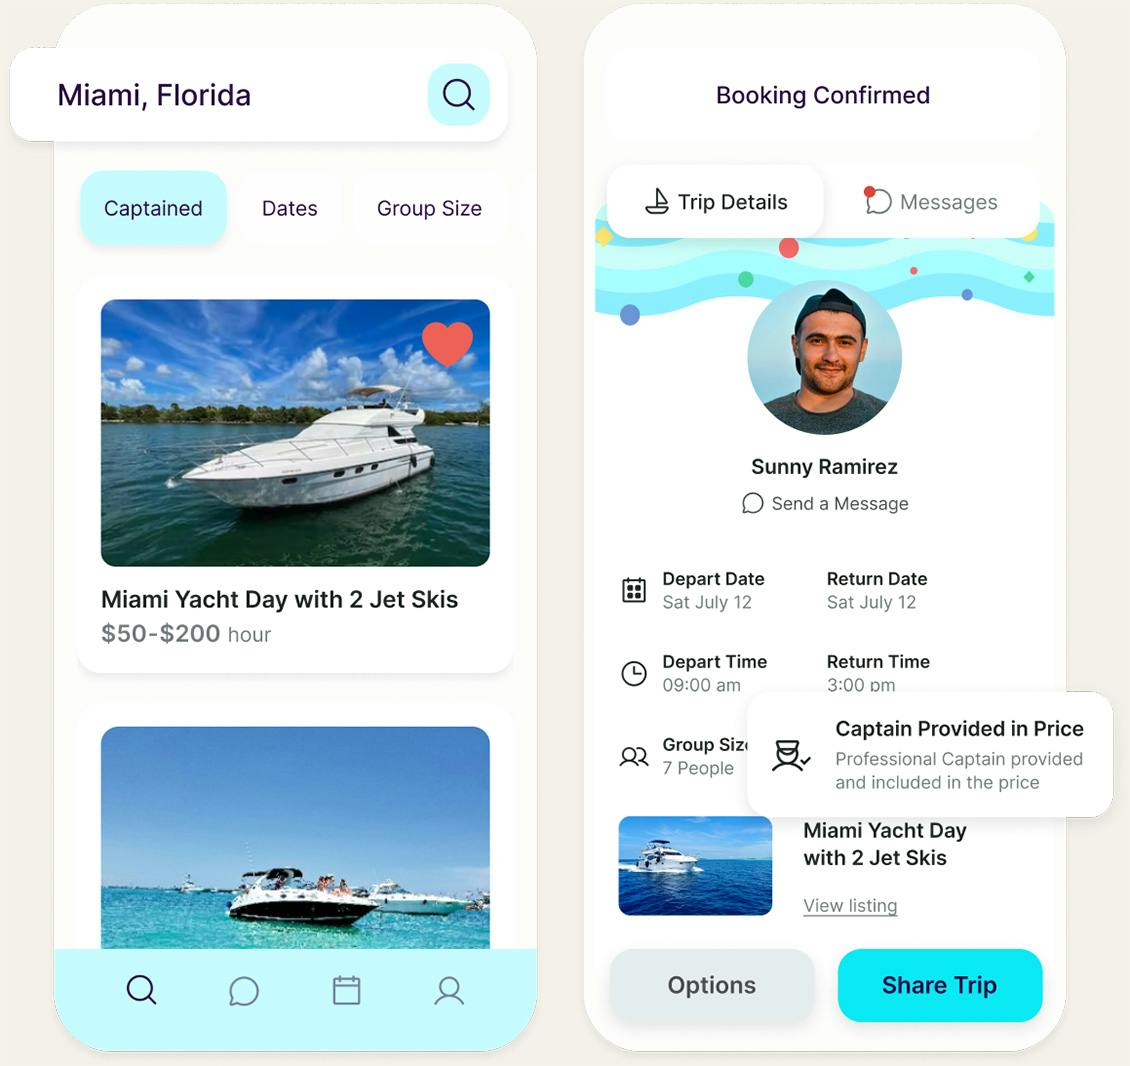 Imágenes de la aplicación móvil que destacan las funciones de búsqueda y reserva de viajes con capitán incluido en el precio.